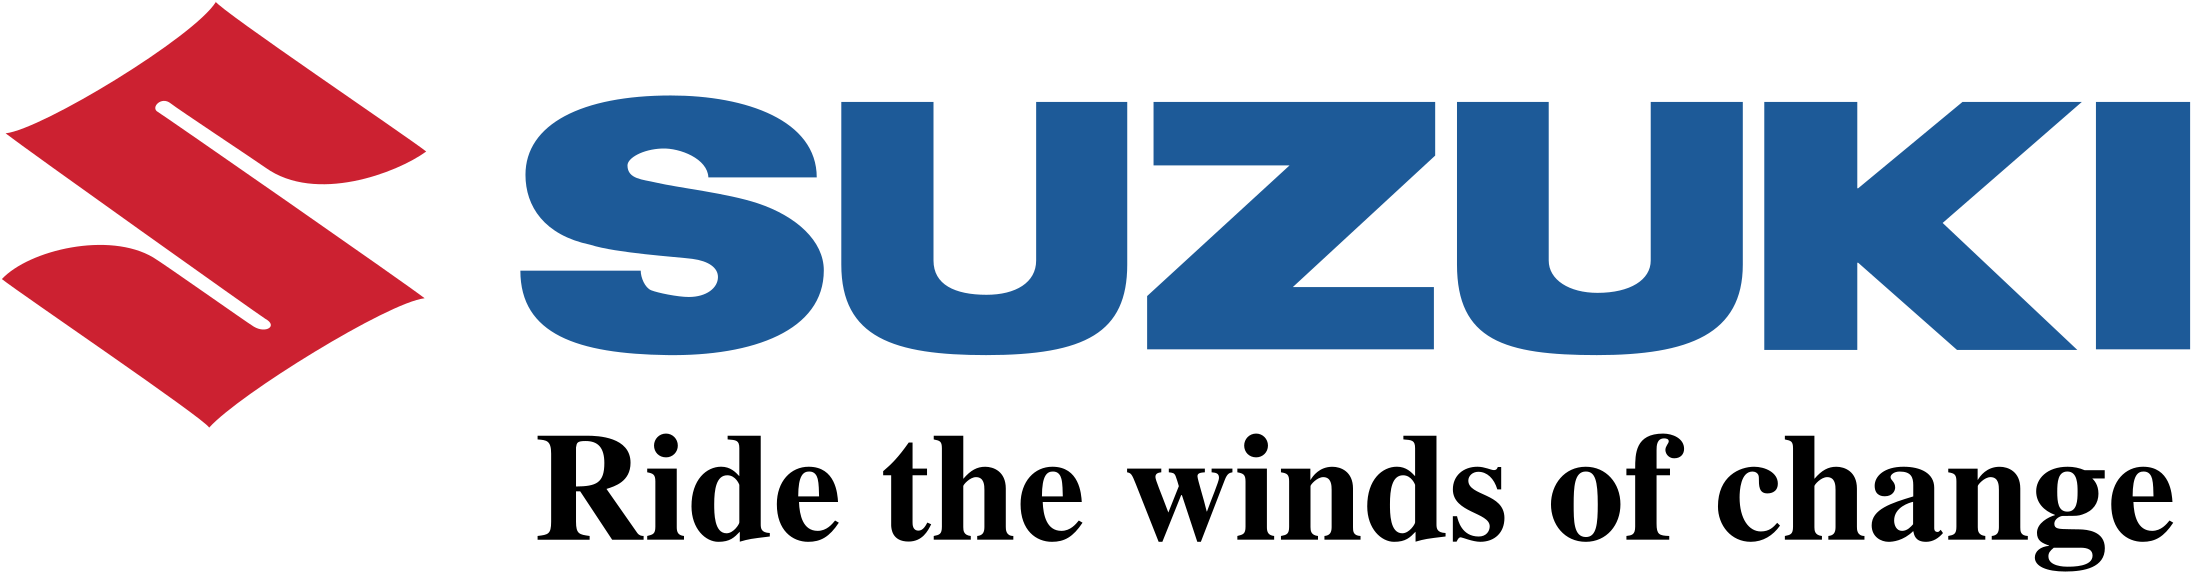 Suzuki logo PNG Clipart